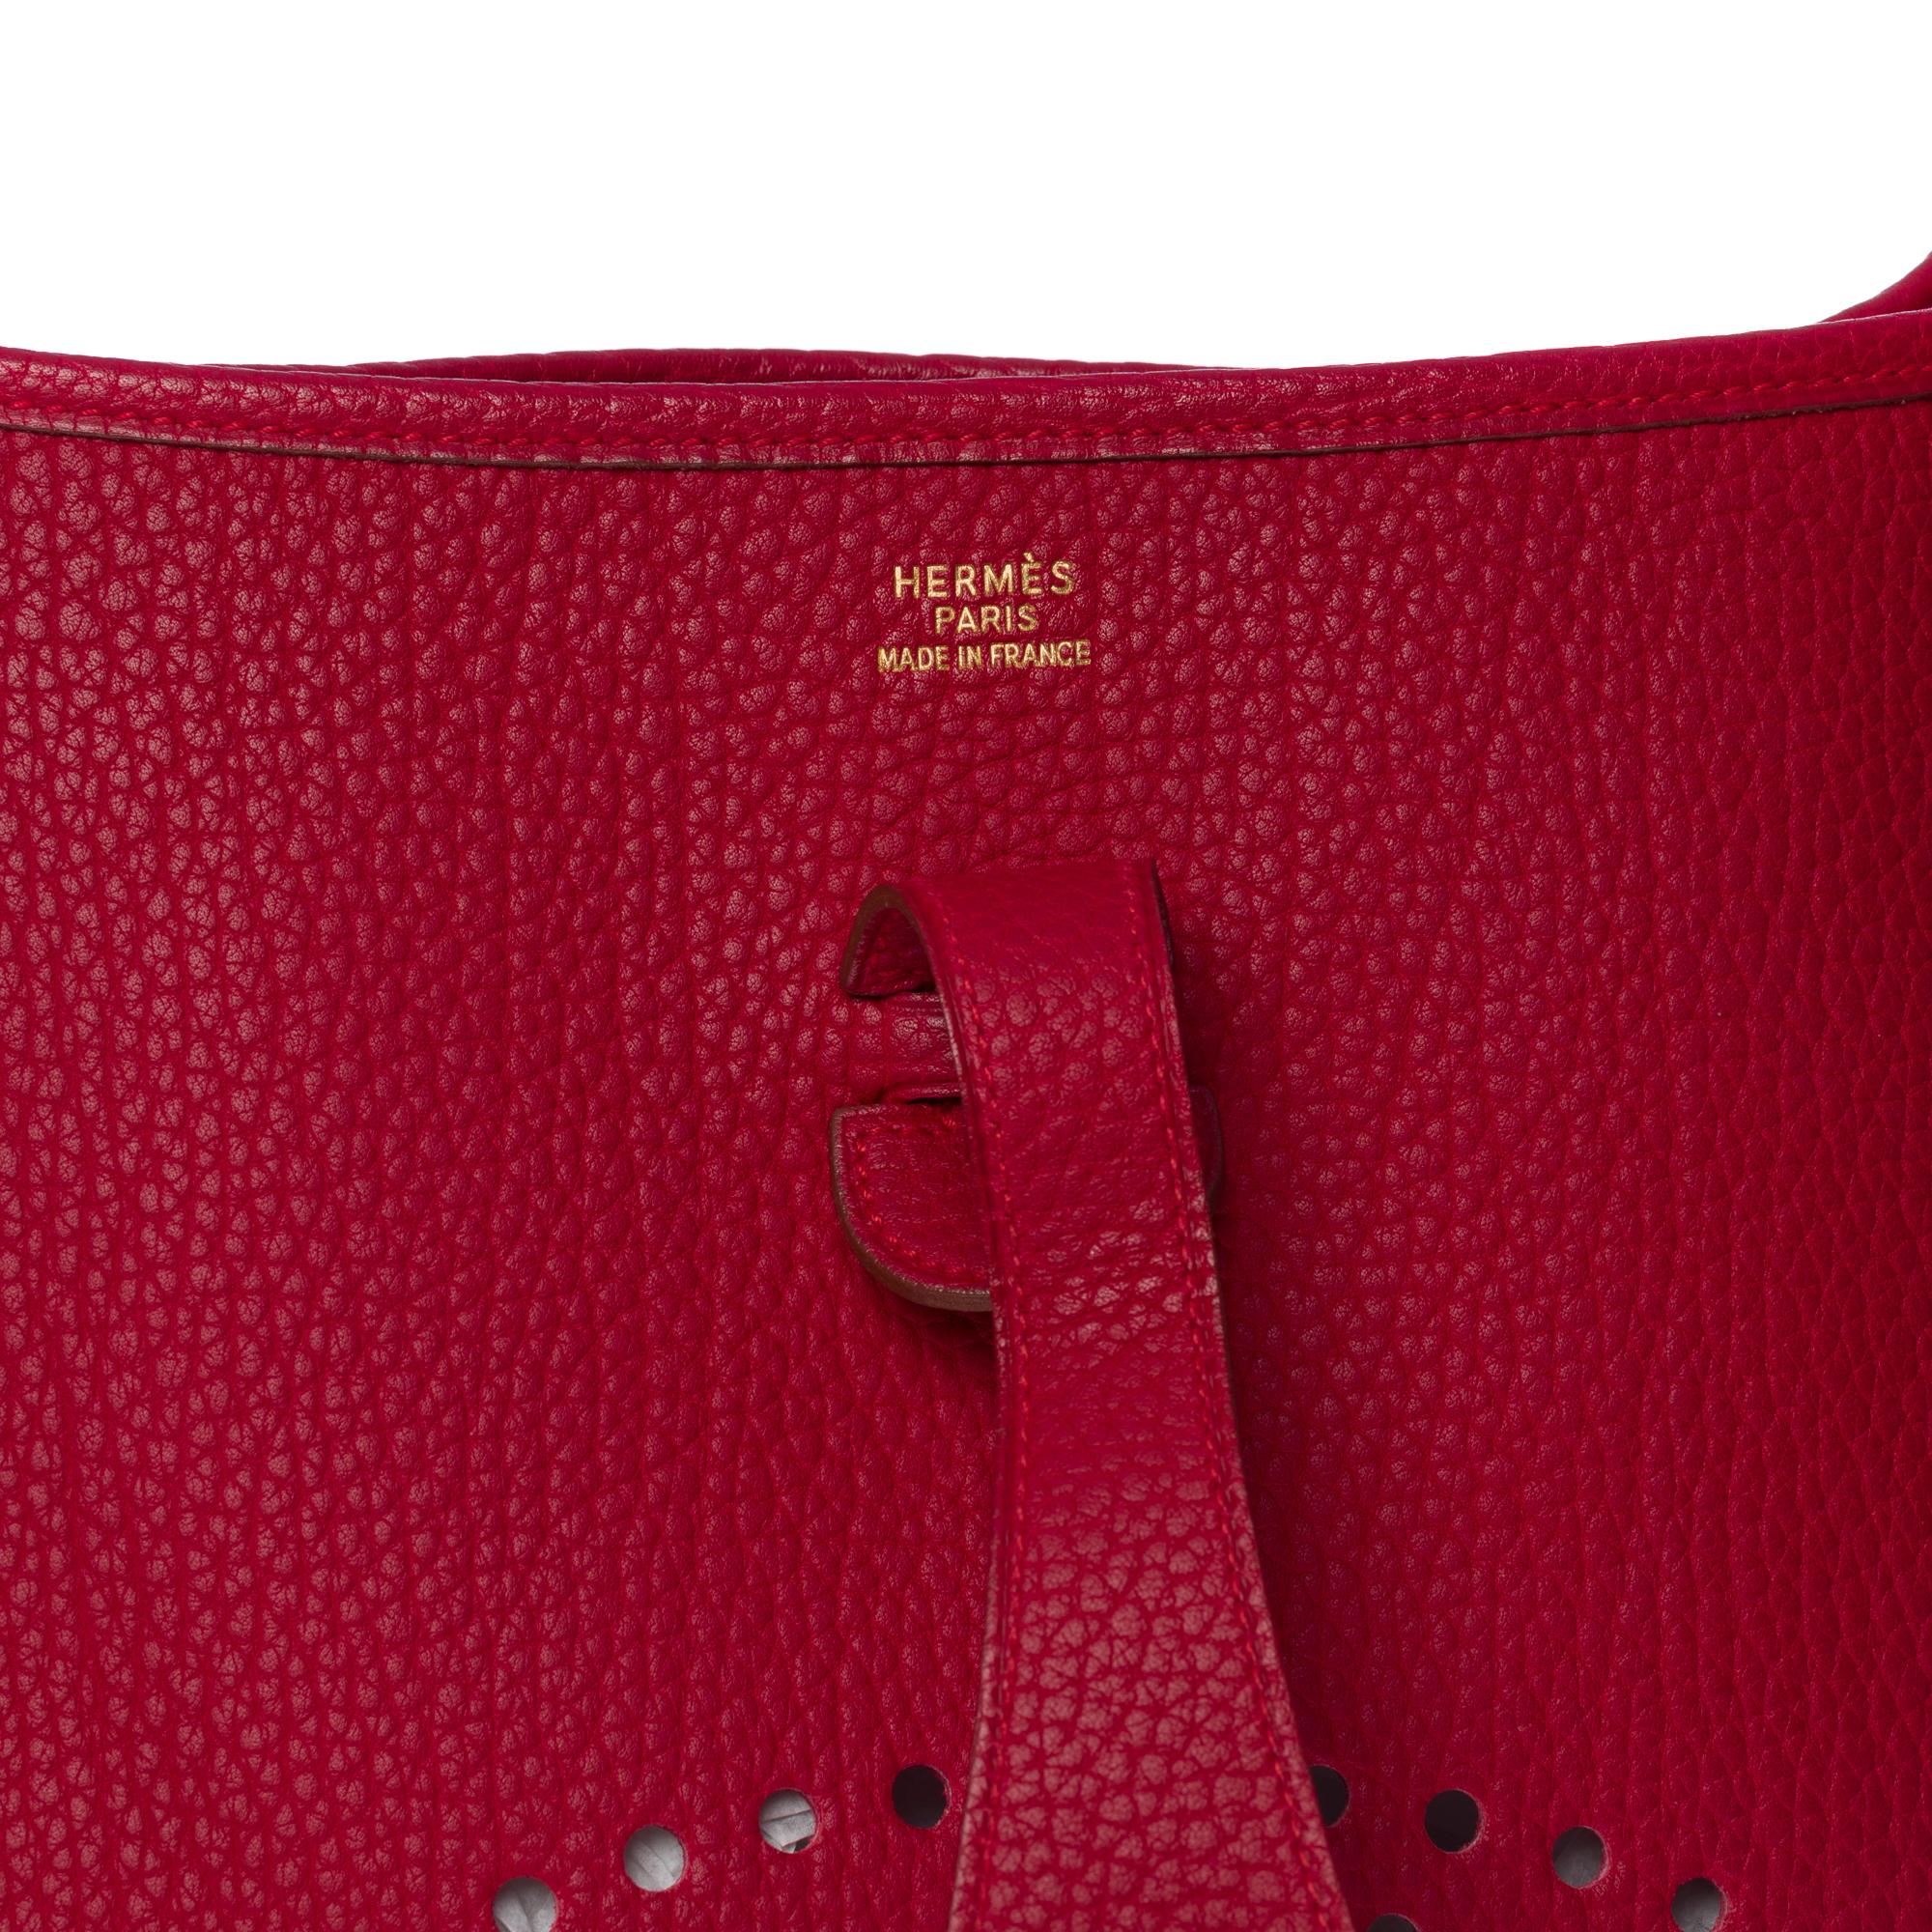 Gorgeous Hermès Evelyne 33 (GM)  shoulder bag in Red Casaque Togo leather, GHW For Sale 3